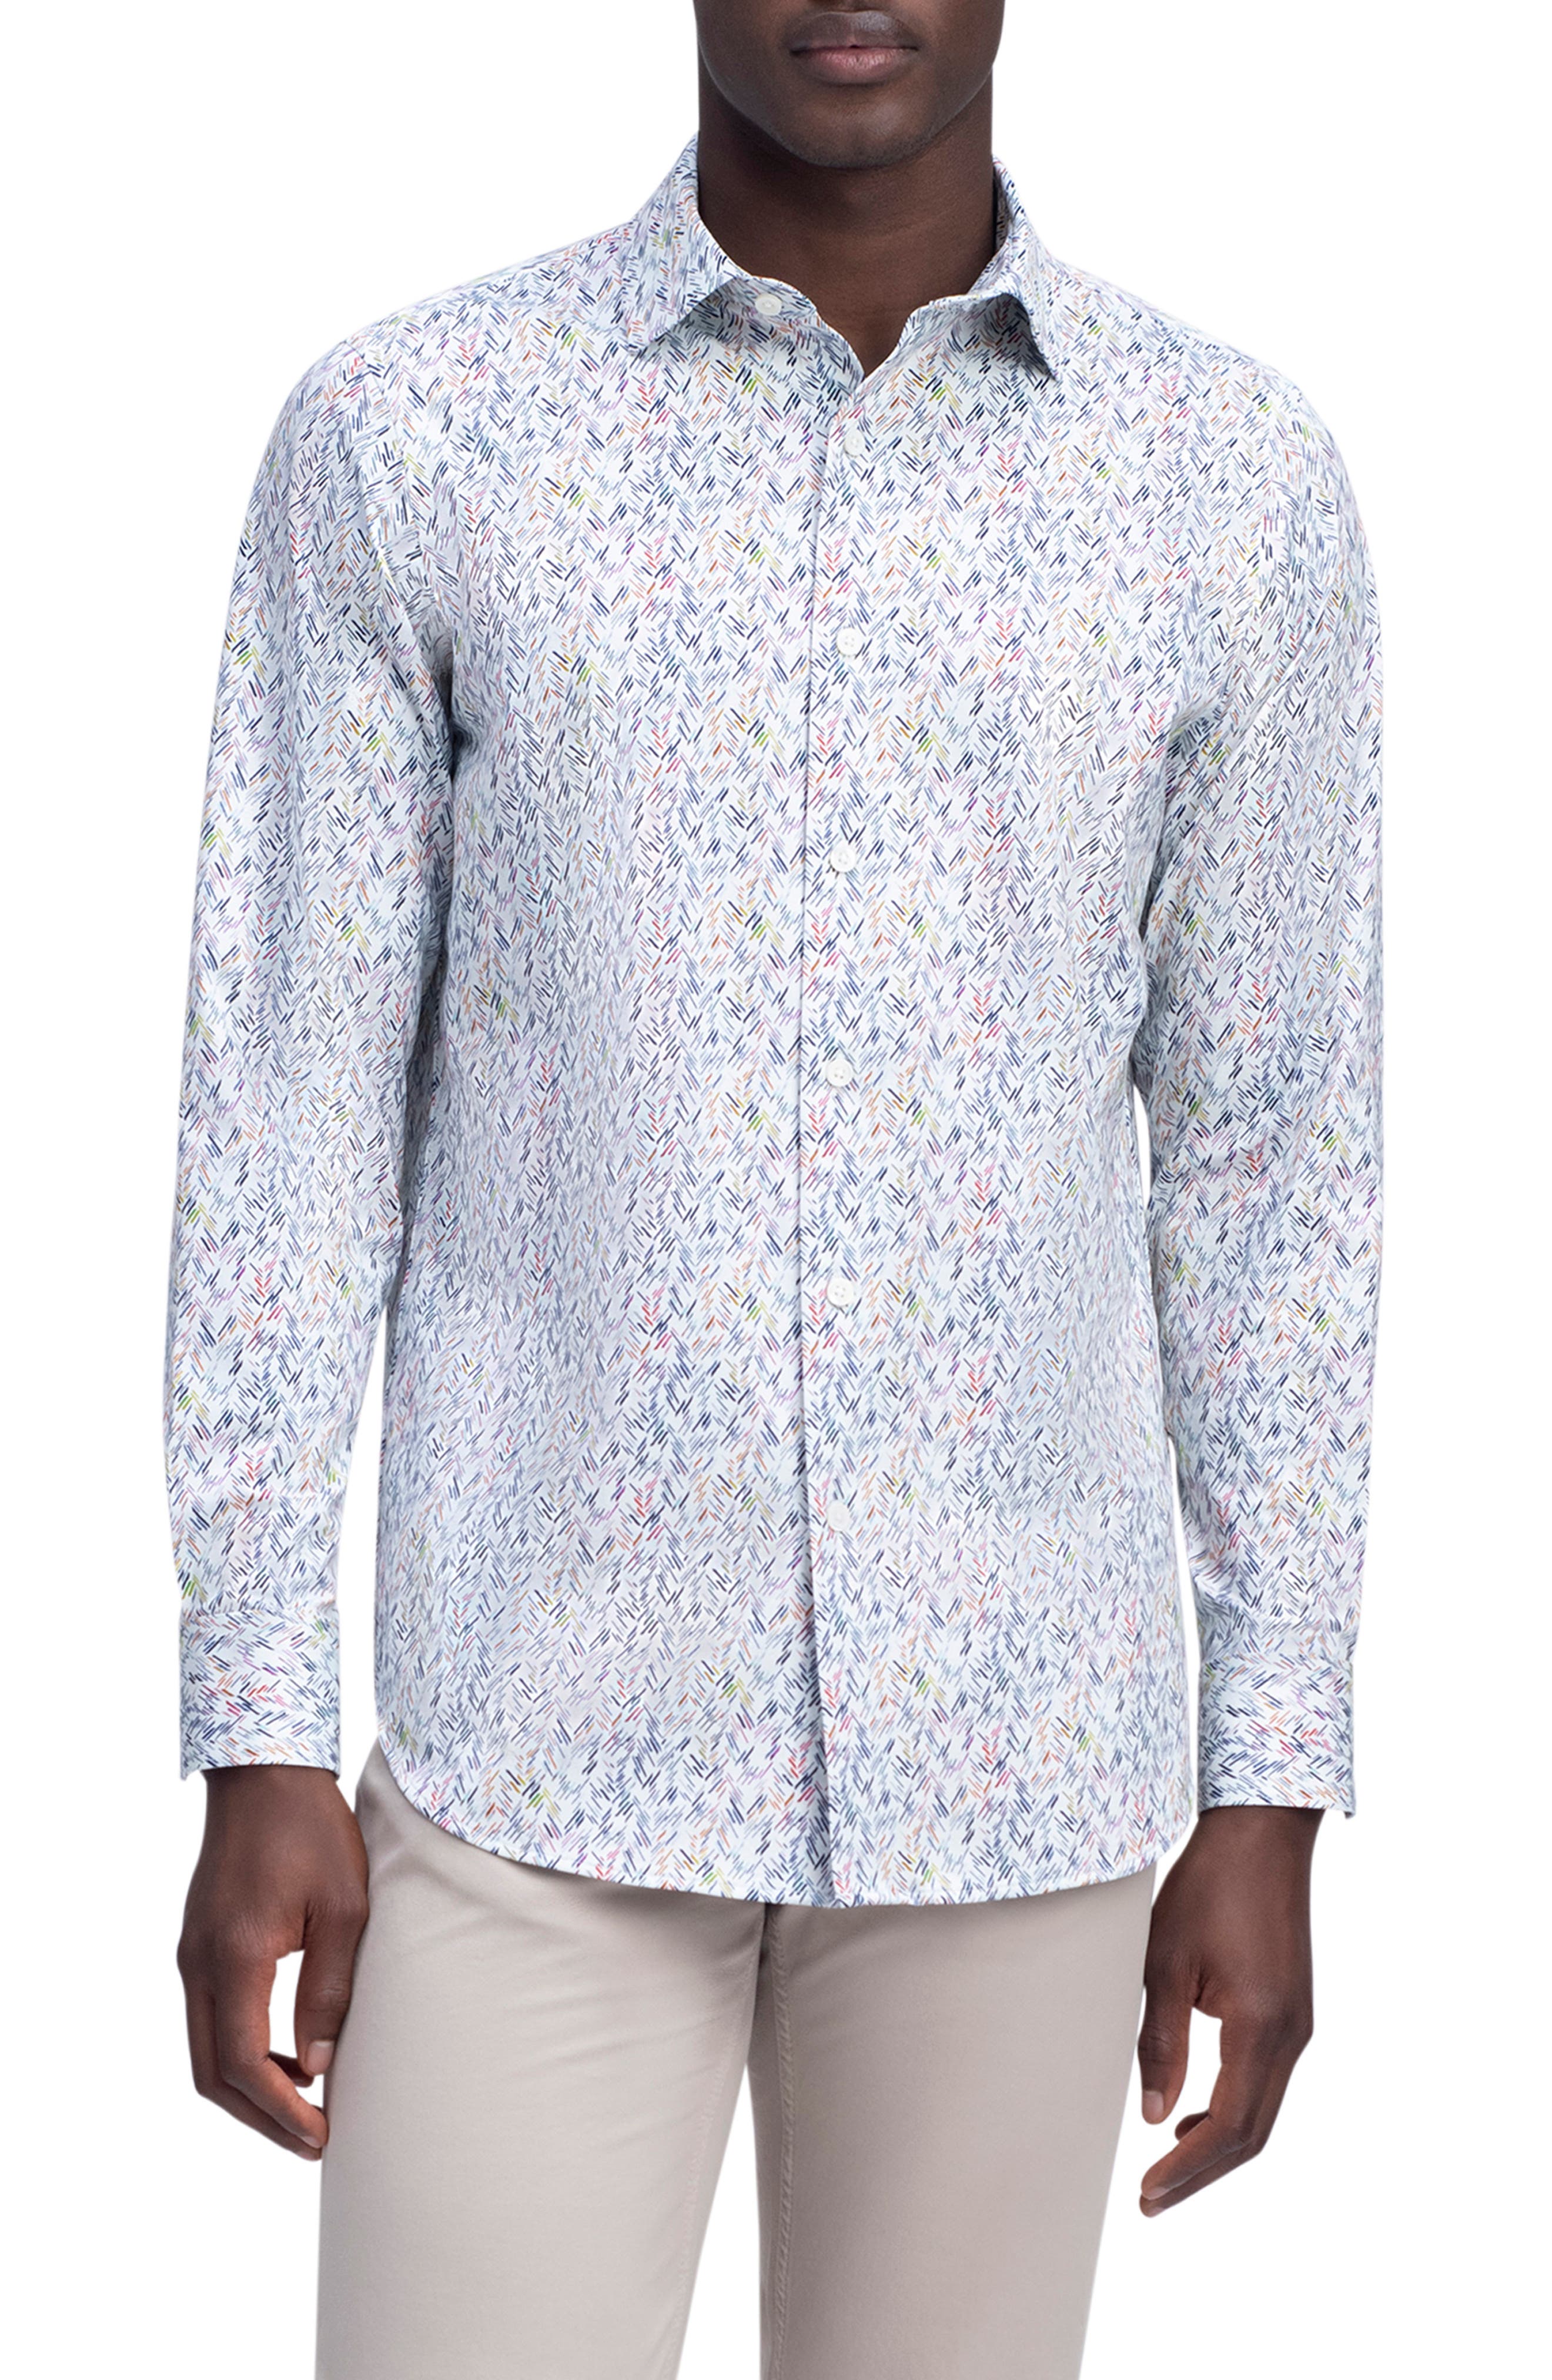 SportsX Men Big & Tall Classic Patterned African Longshirt Woven Shirt 